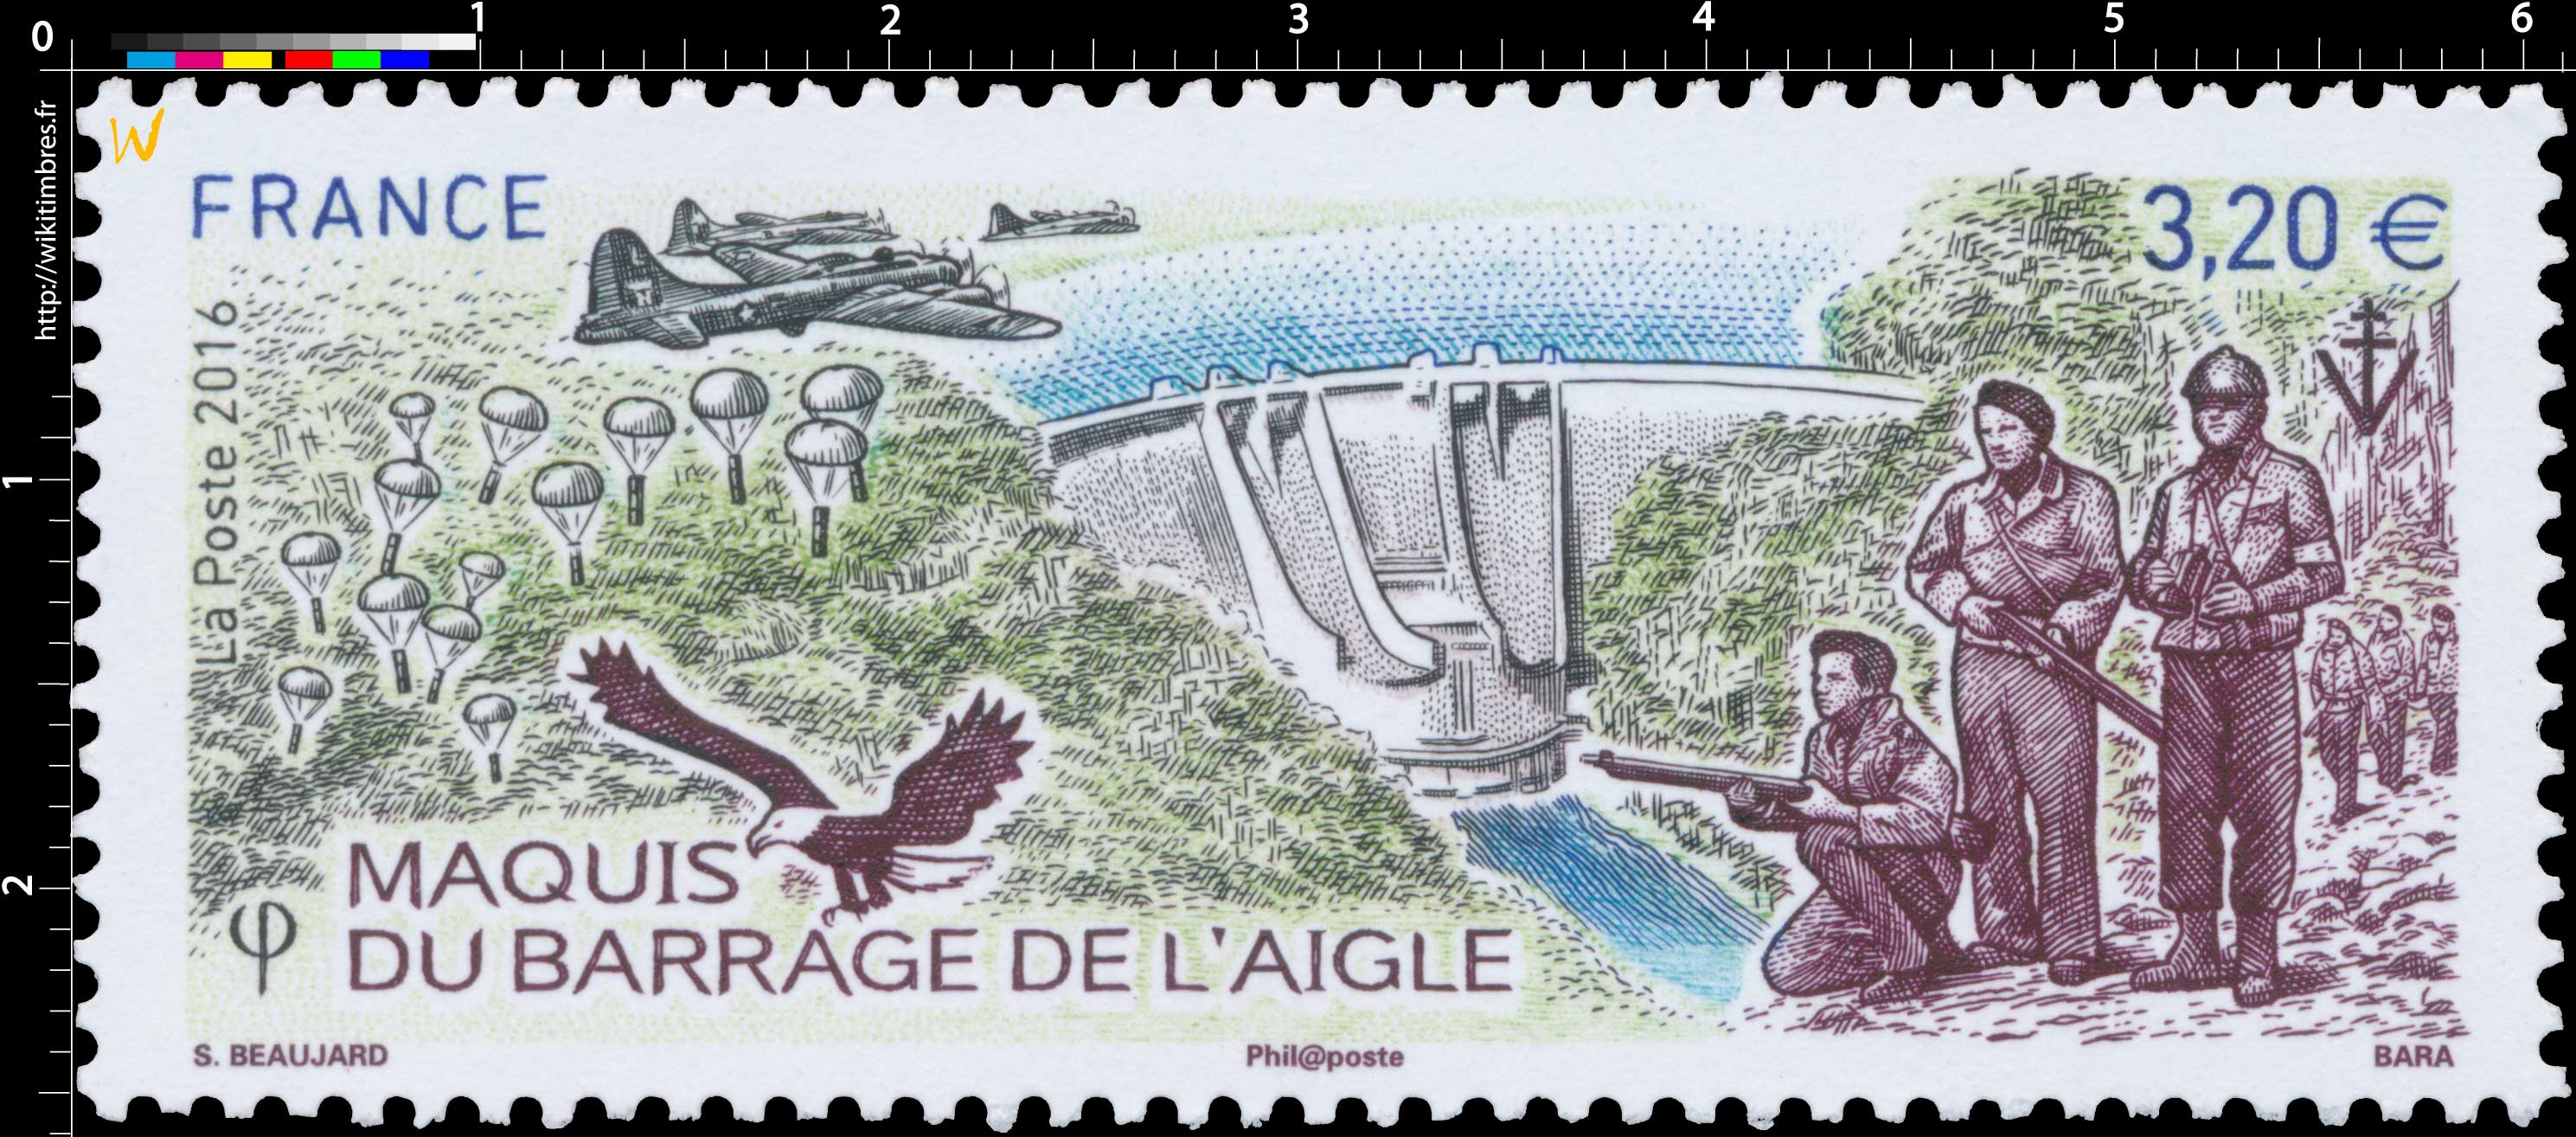 2016 Maquis du barrage de l'Aigle